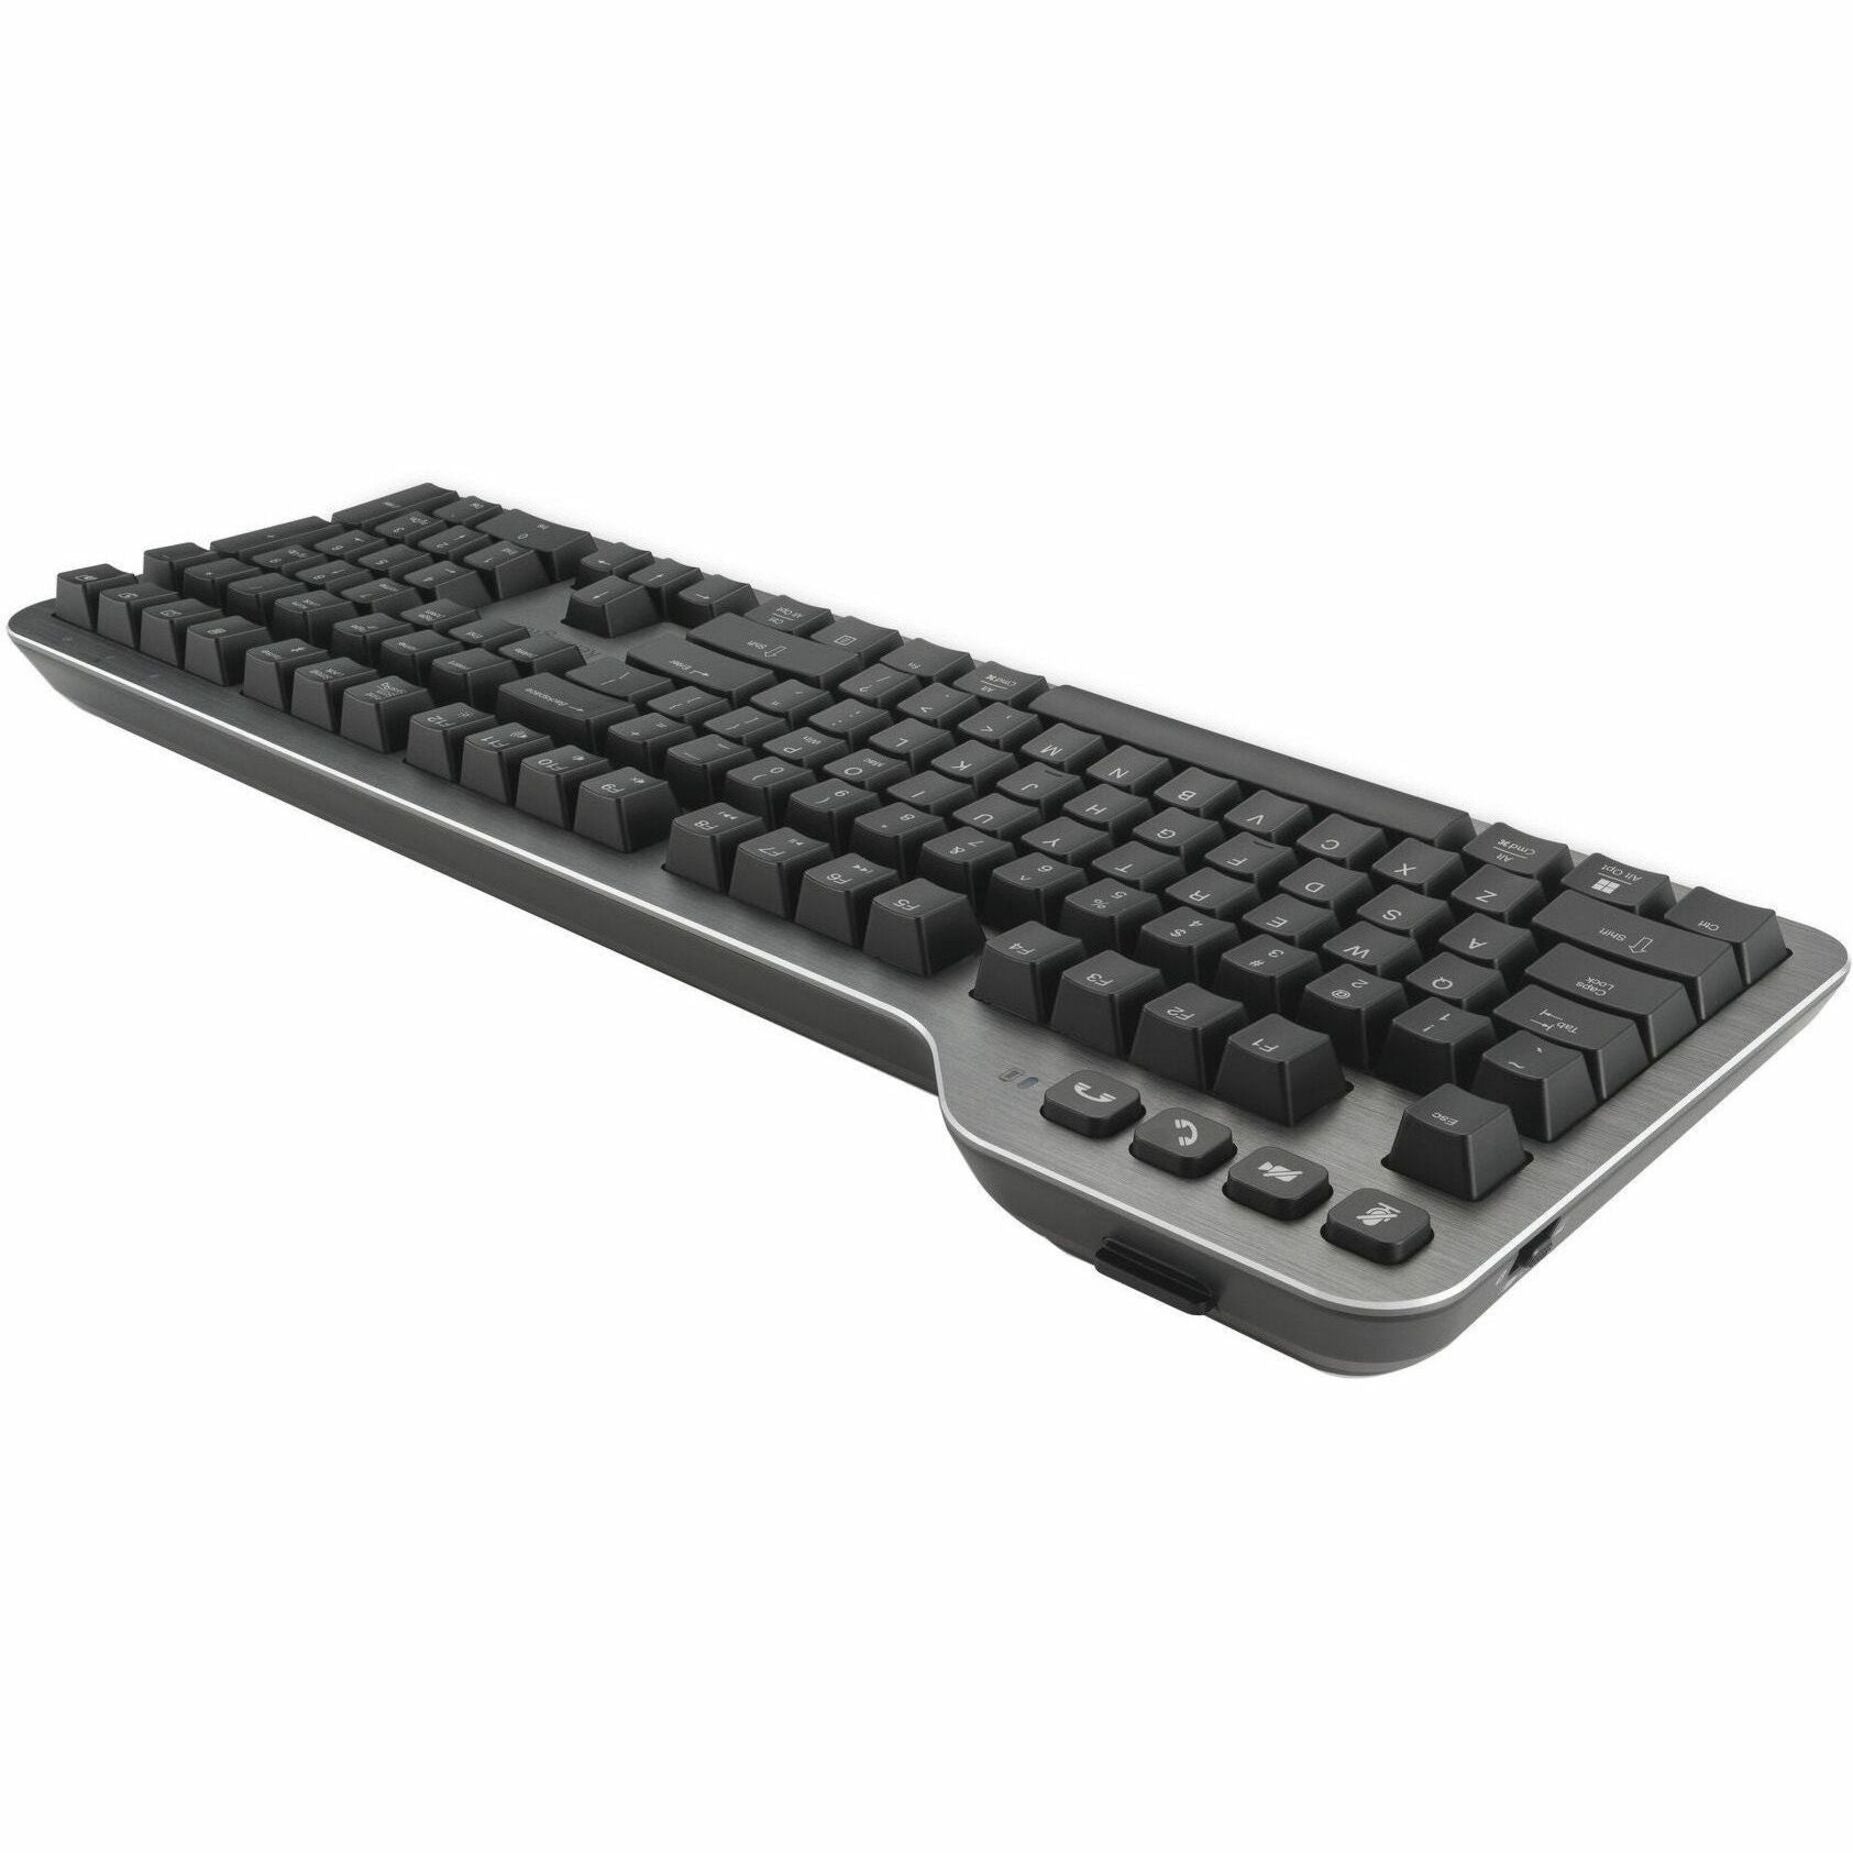 Kensington K72201US MK7500F Tastatur ergonomisches Design einstellbare Hintergrundbeleuchtung spritzwassergeschützt